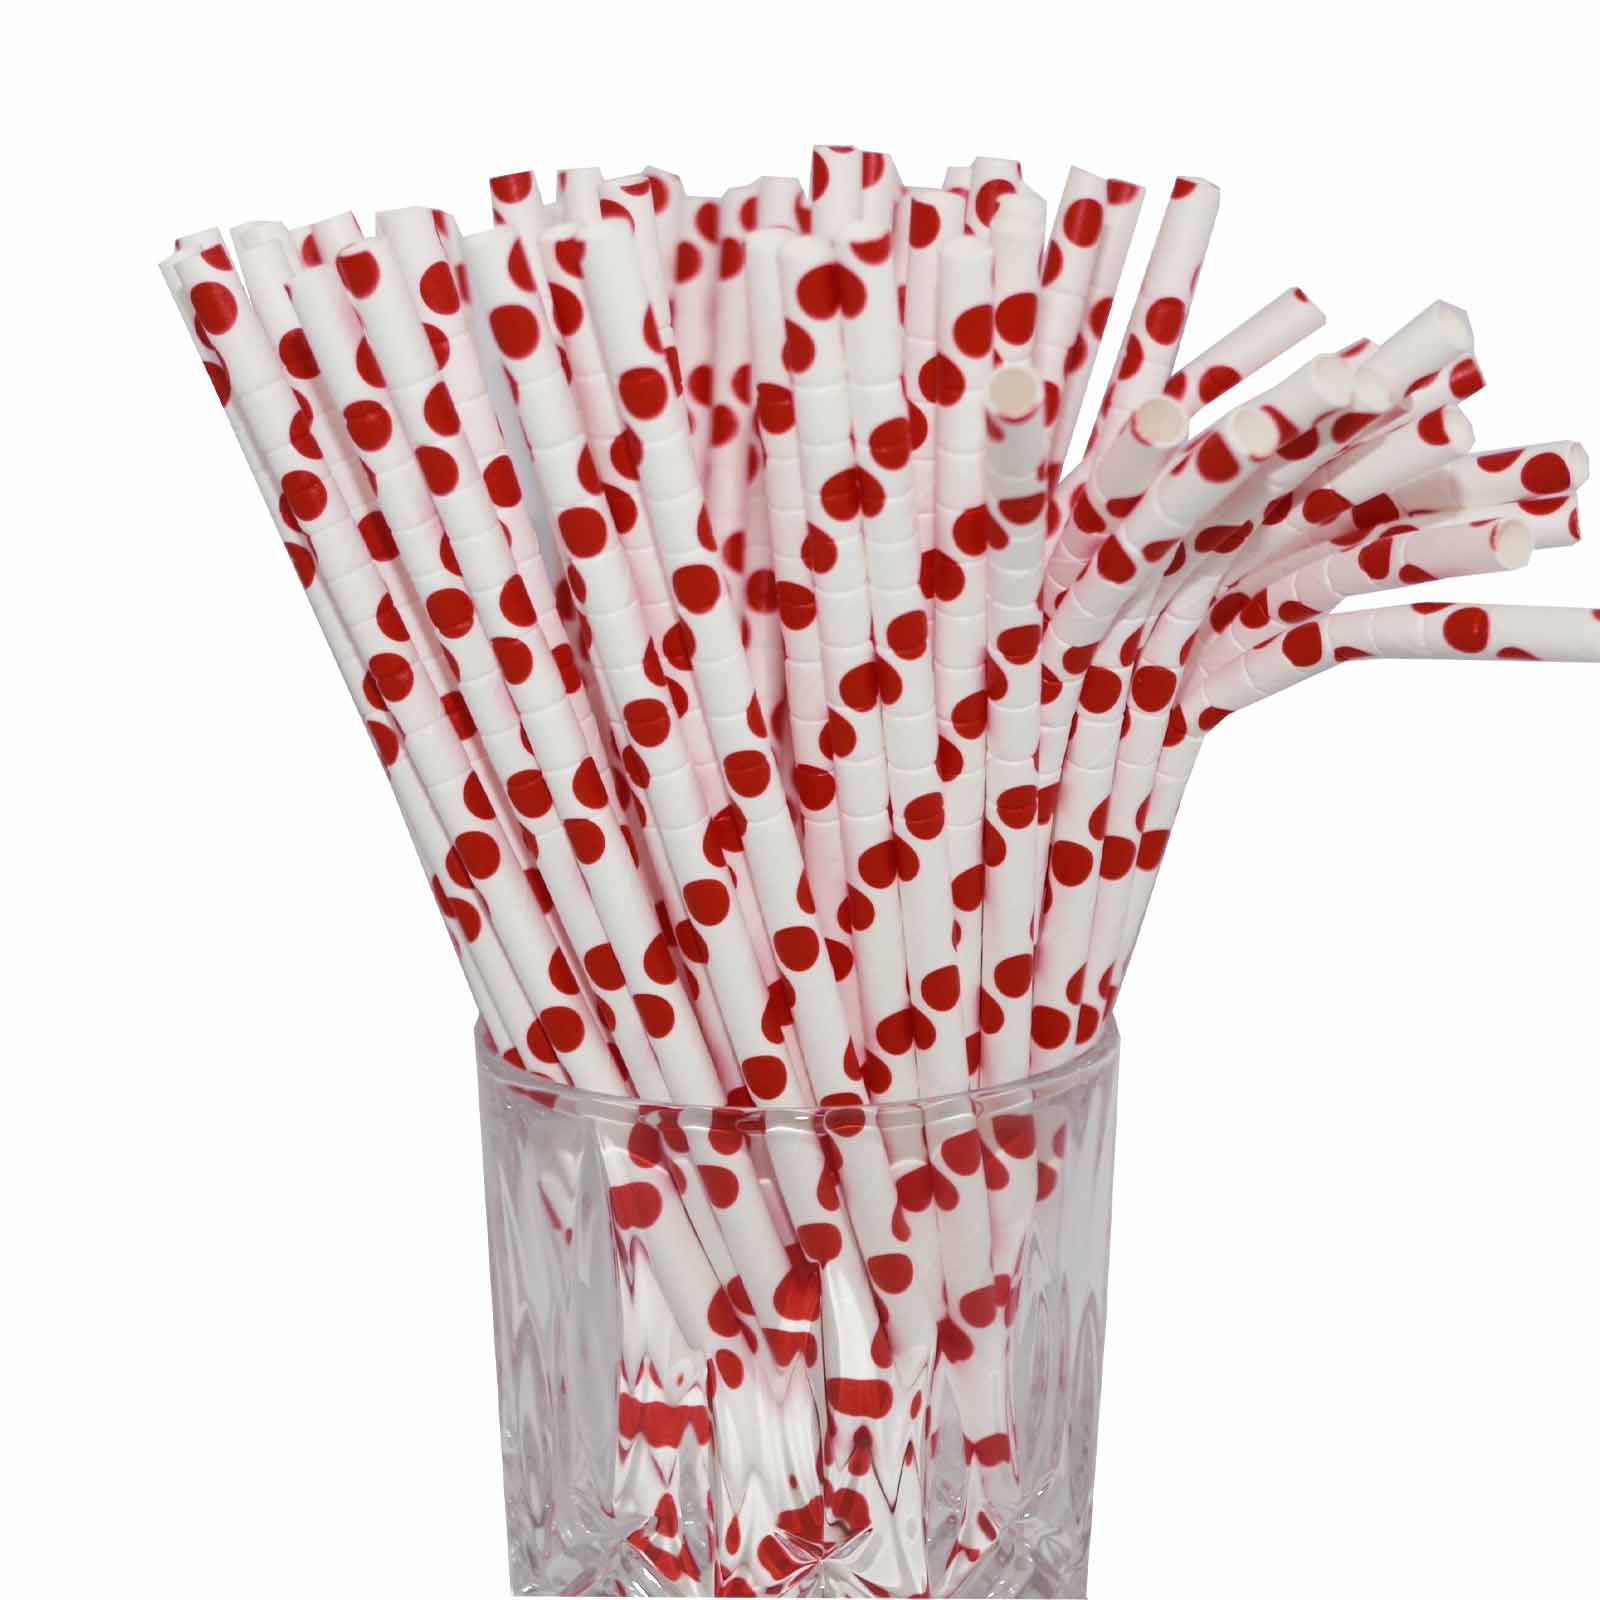 Papier-Trinkhalm rot/weiß gepunktet mit Knick 100 Stück - A 